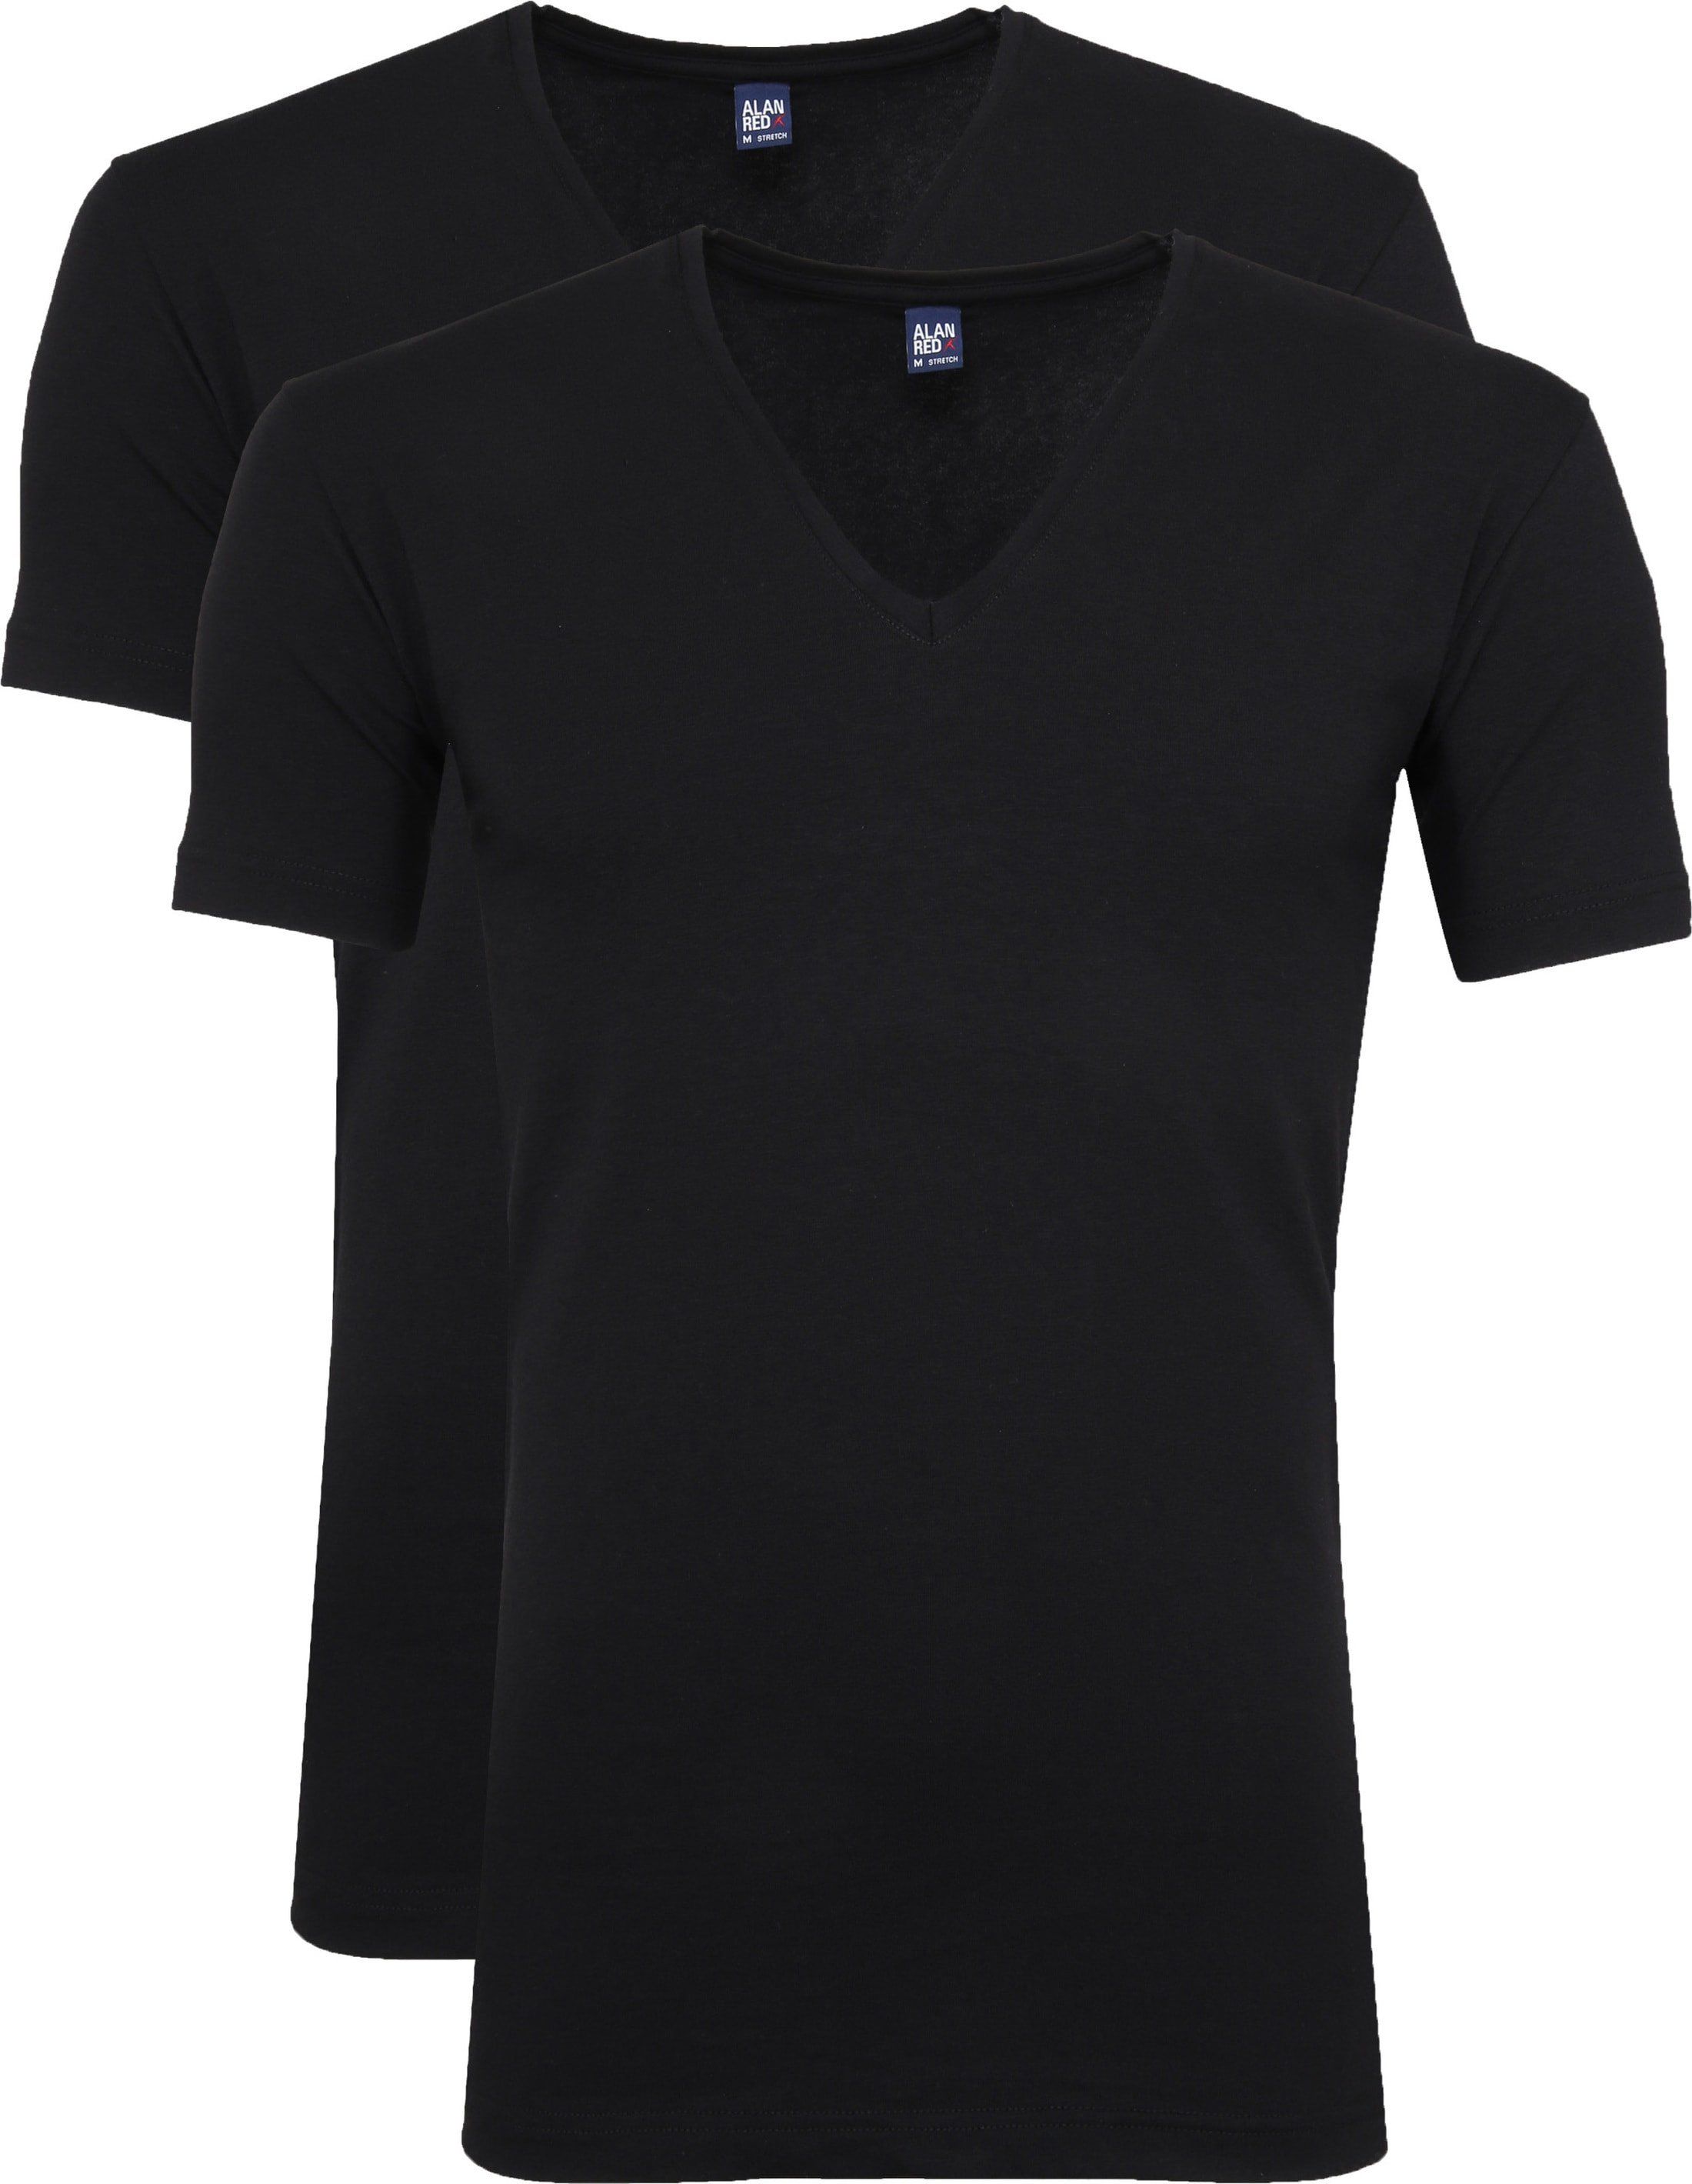 Alan Red T-Shirt V-Neck Stretch 2-Pack Black size L